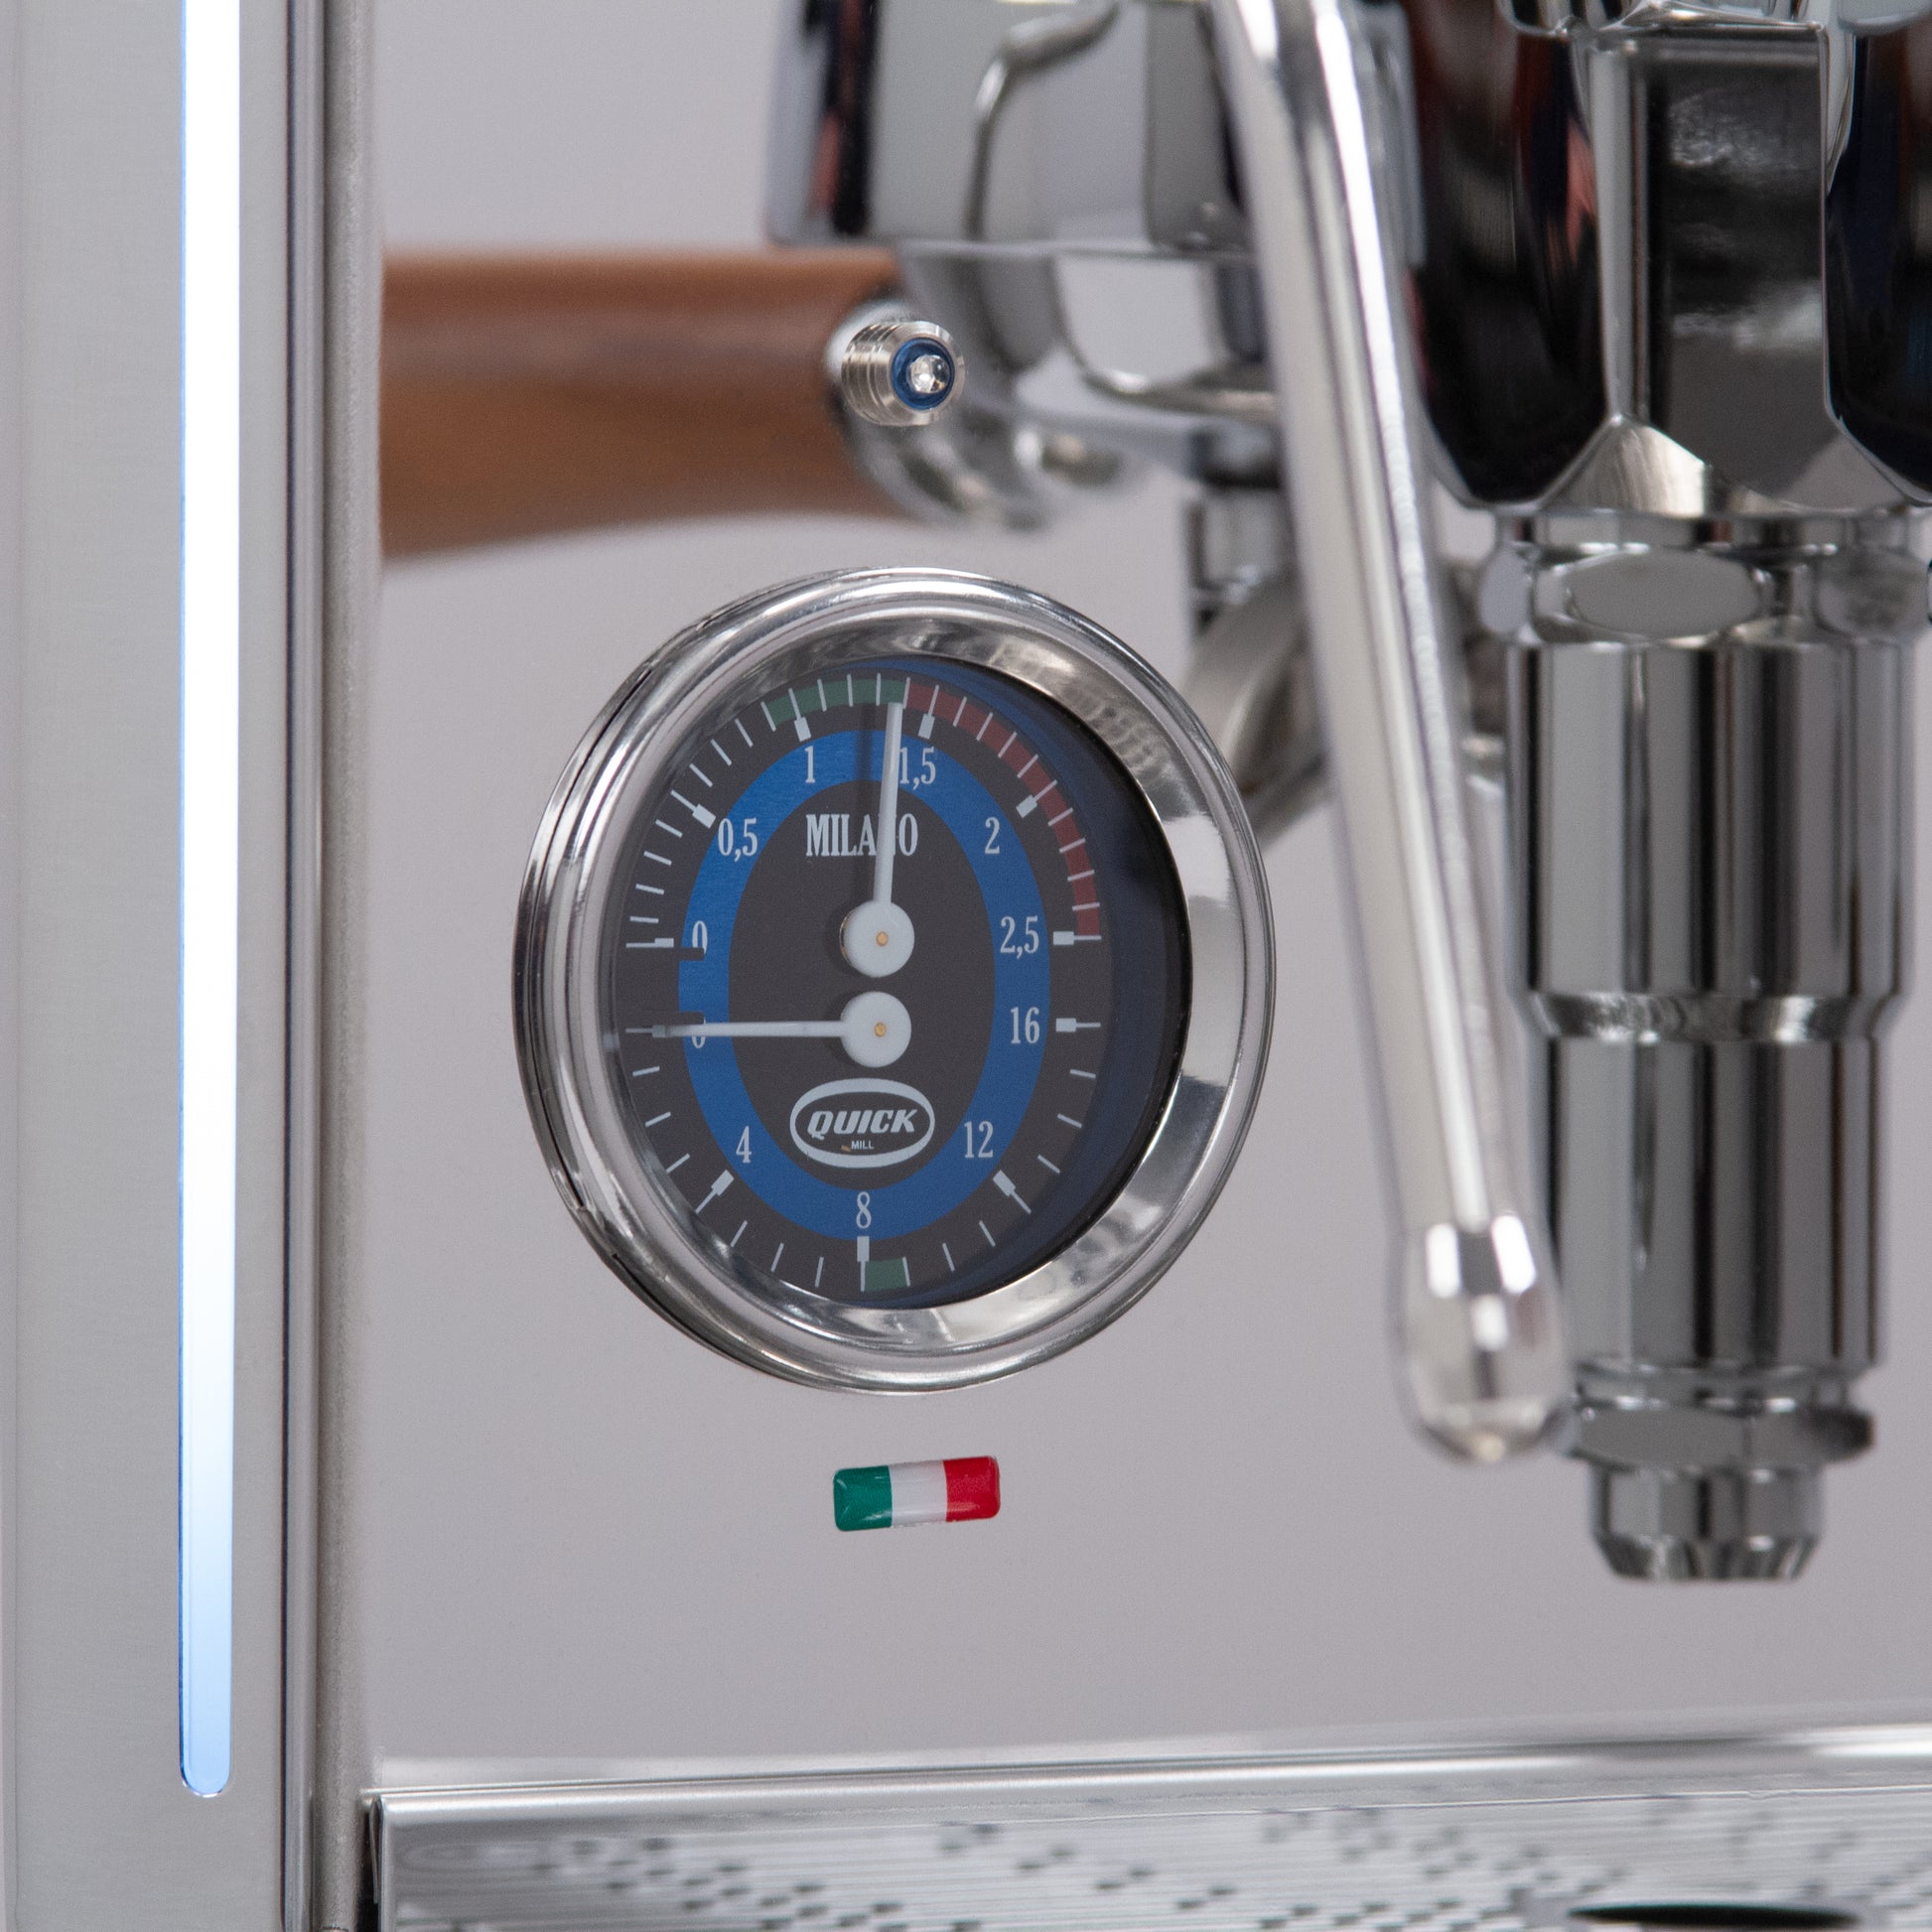 Quick Mill Arnos Espresso Machine - Walnut Accents – Whole Latte Love